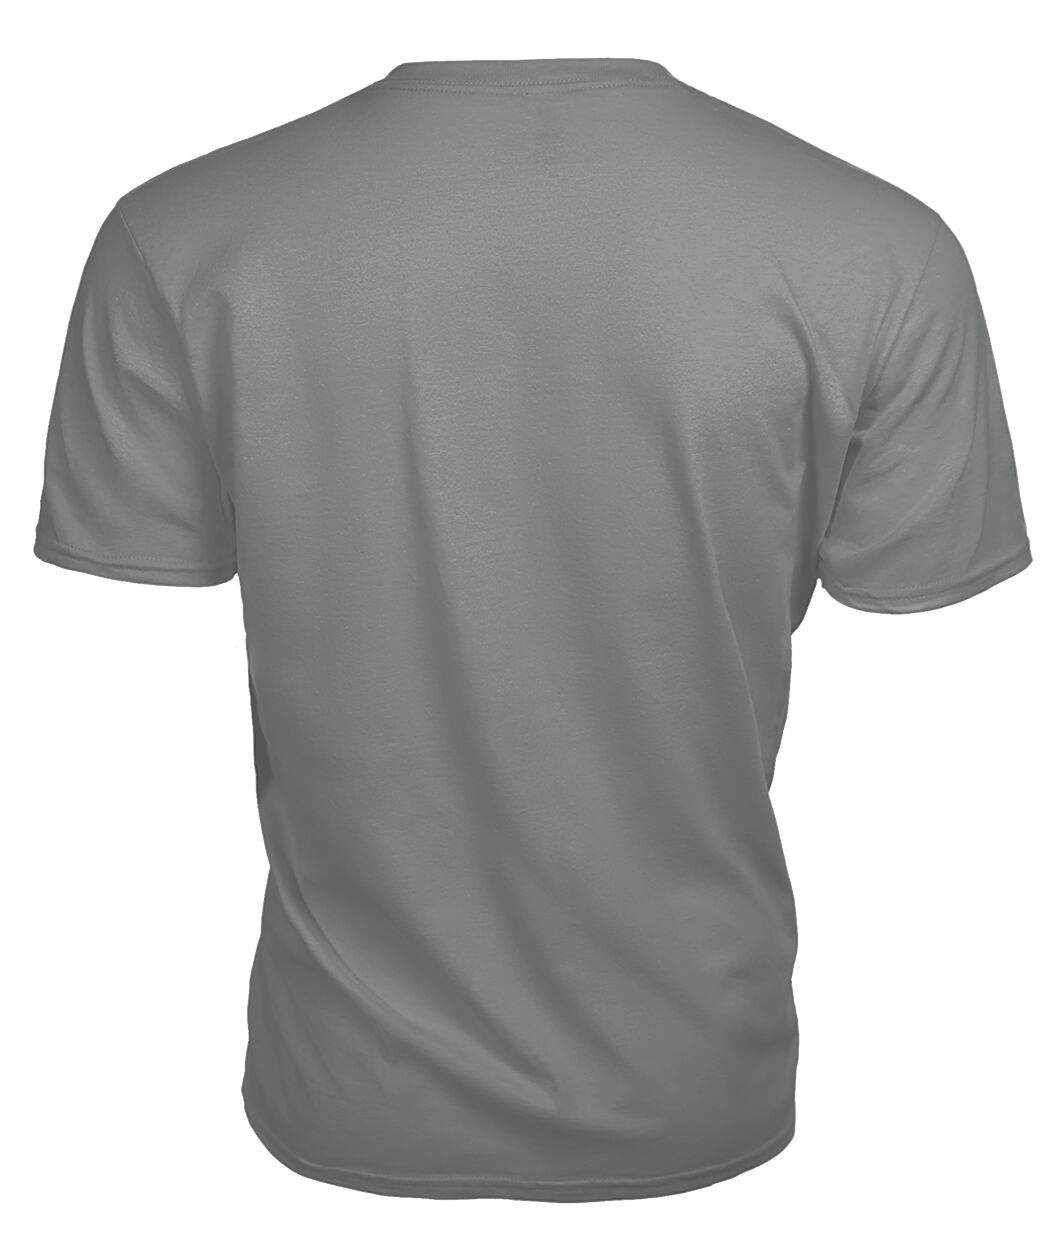 Moffat Family Tartan - 2D T-shirt